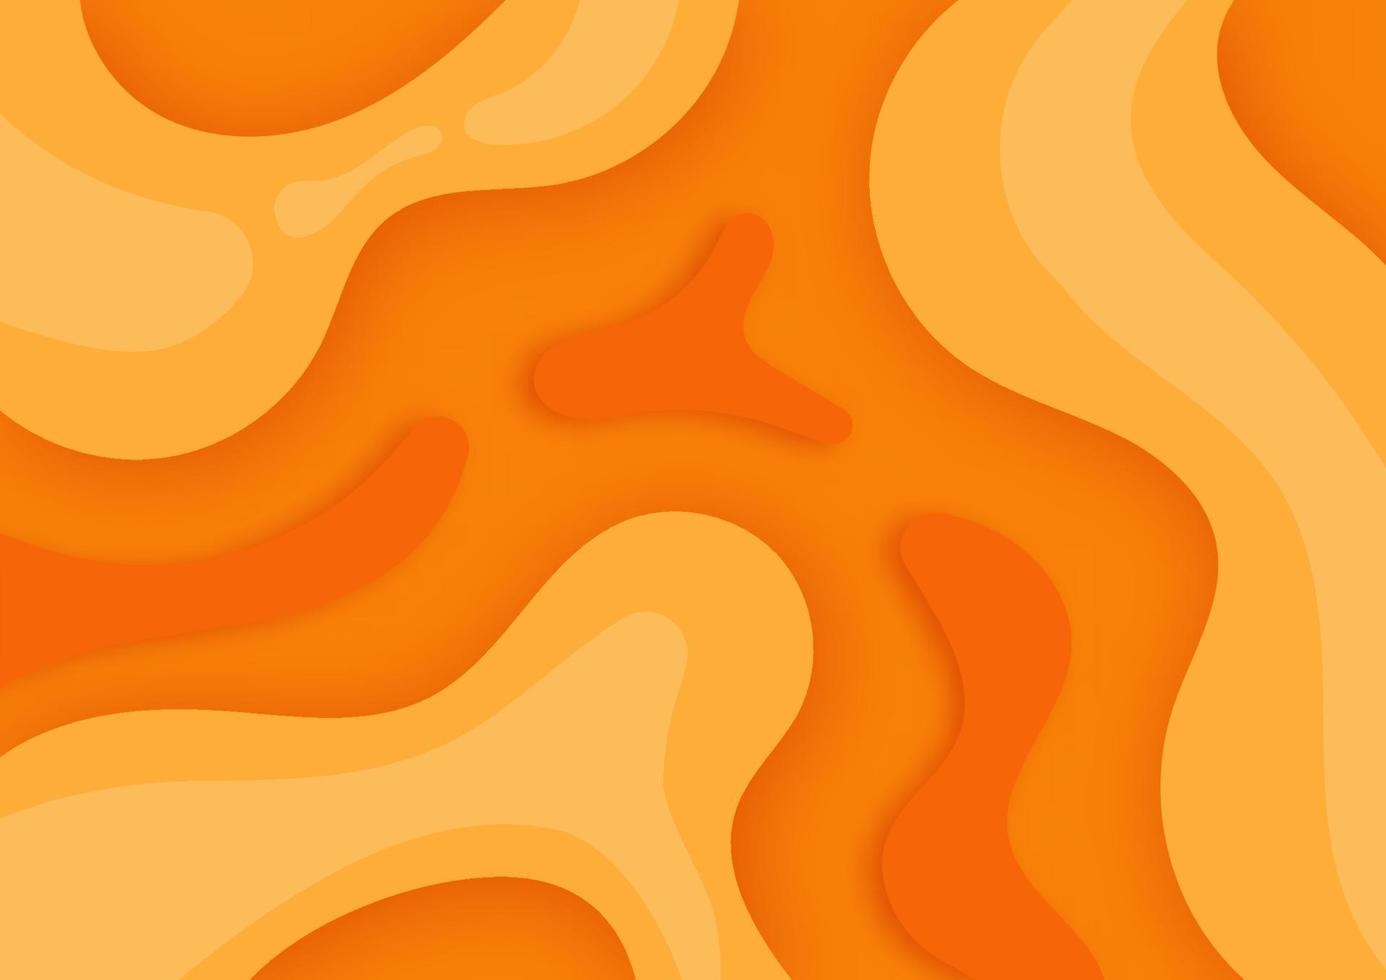 Banner-Design im dynamischen Stil. orange Elemente mit flüssigem Farbverlauf. Kreative Illustration für Poster, Web, Landung, Seite, Cover, Anzeige, Gruß, Karte, Werbung. vektor